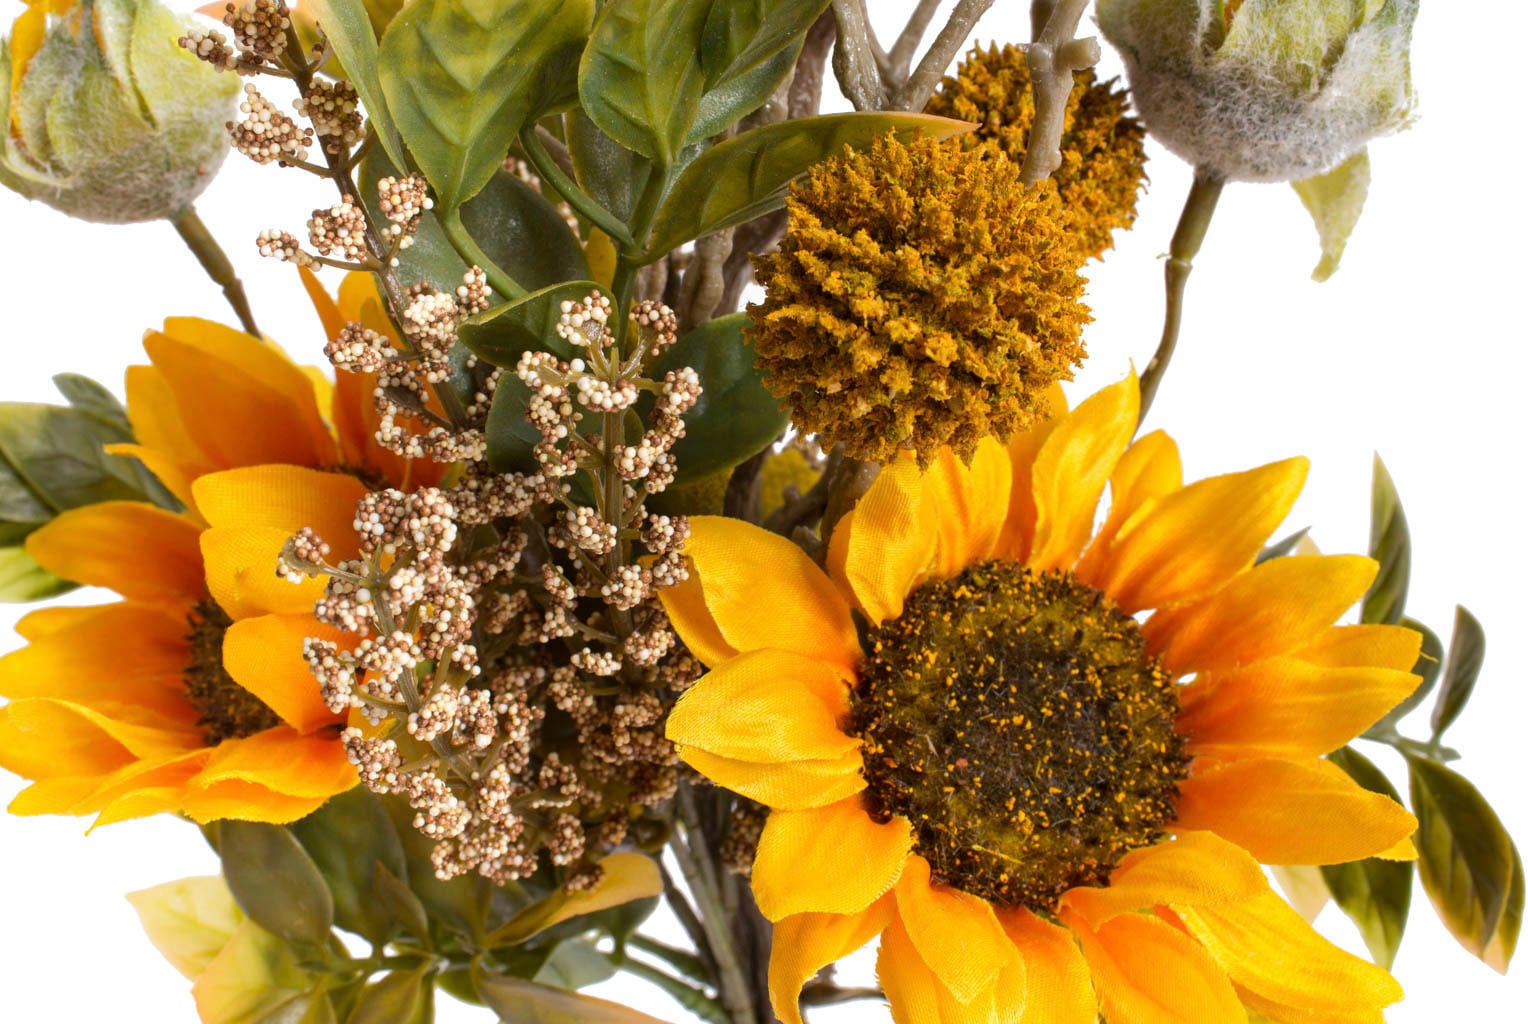 Botanic-Haus Künstliche Zimmerpflanze »Sonnenblumenstrauß im Glas«, (1 St.)  auf Raten bestellen